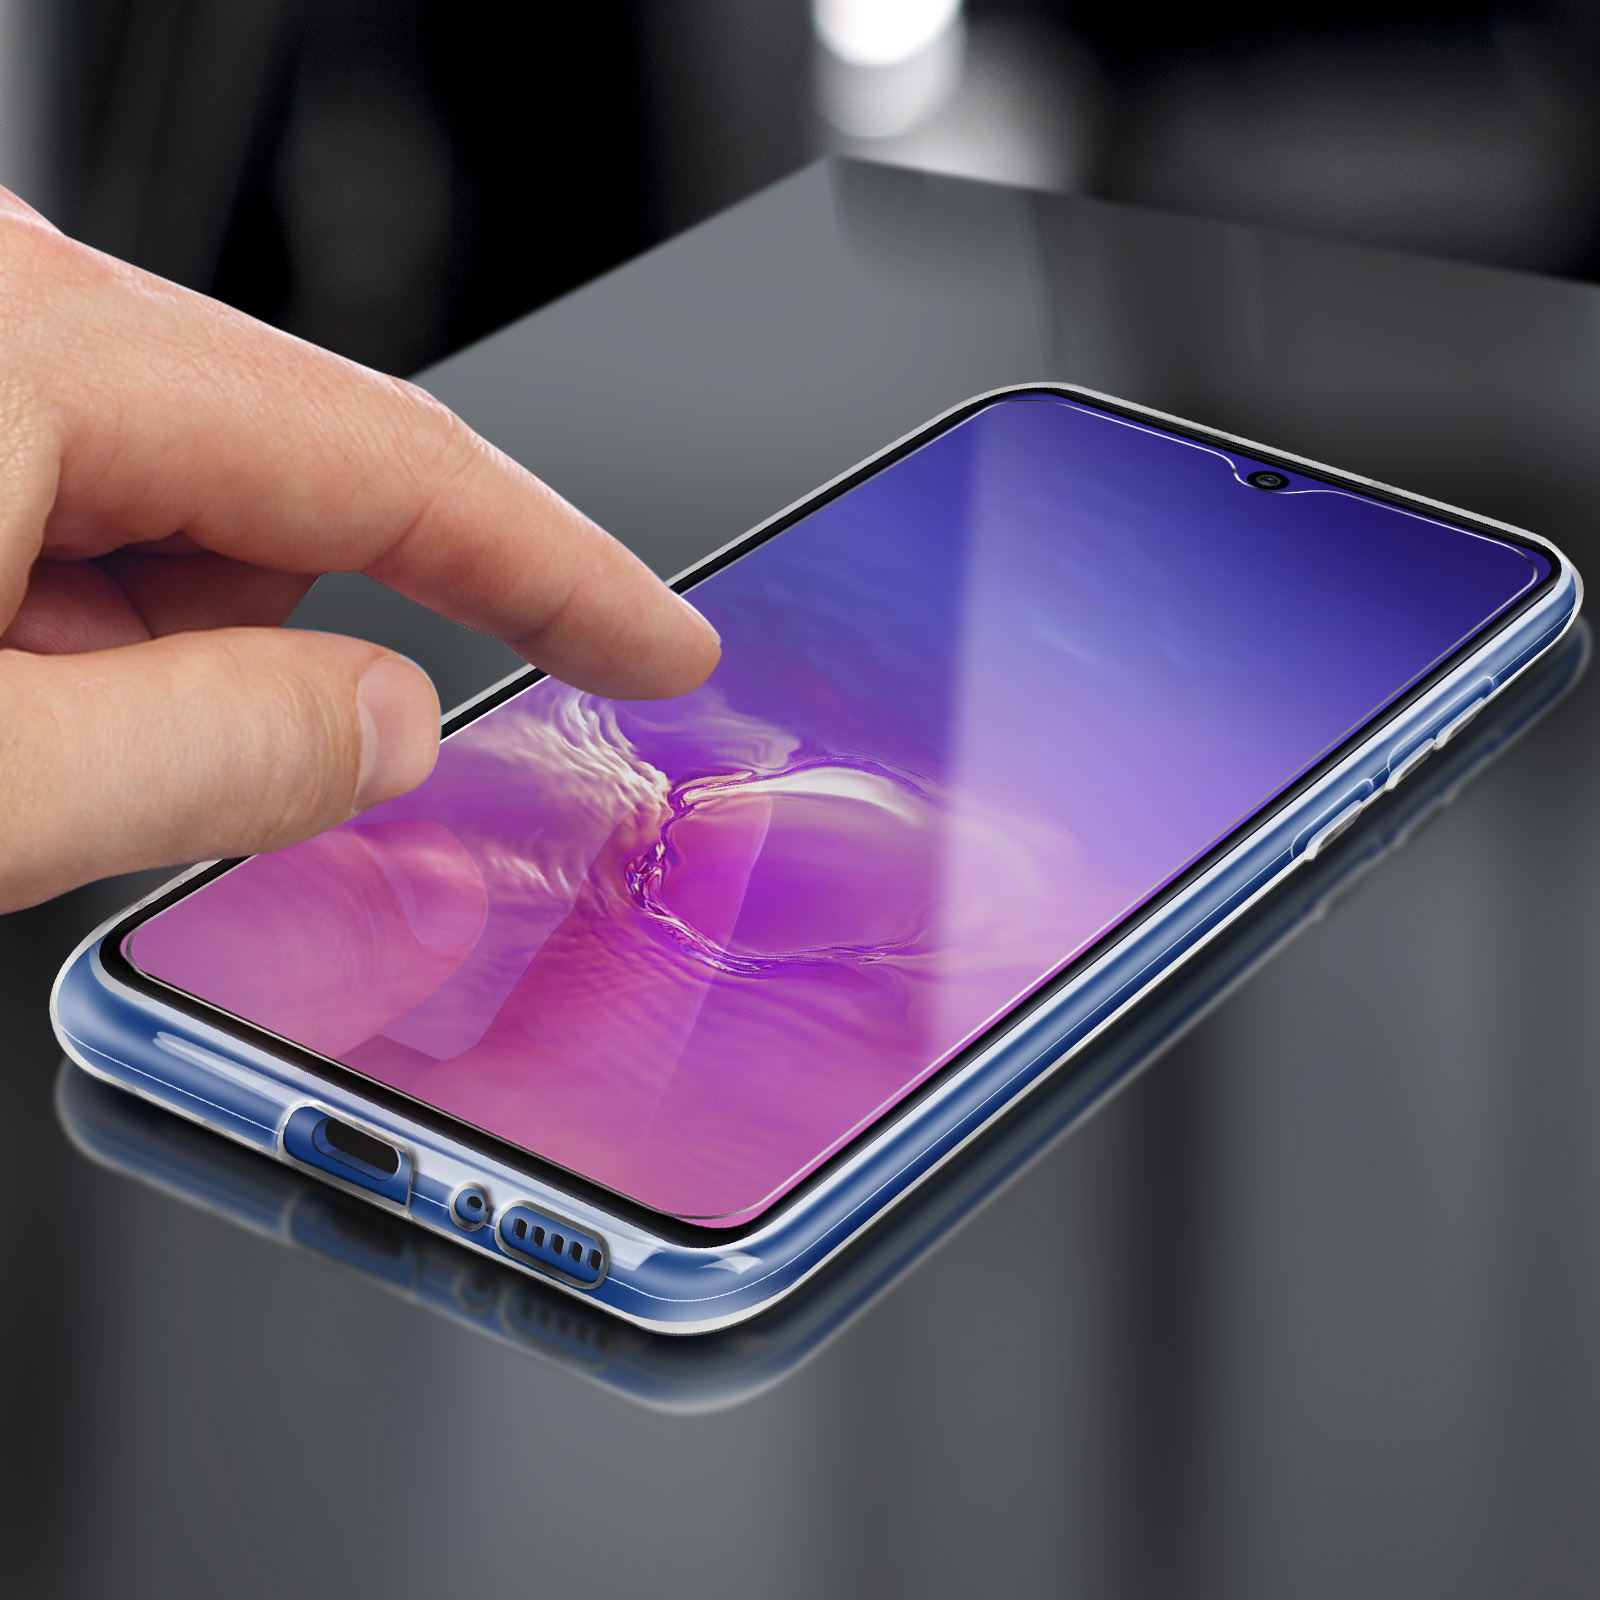 Samsung, Series, Galaxy Backcover, S10 Set Transparent AVIZAR Lite,